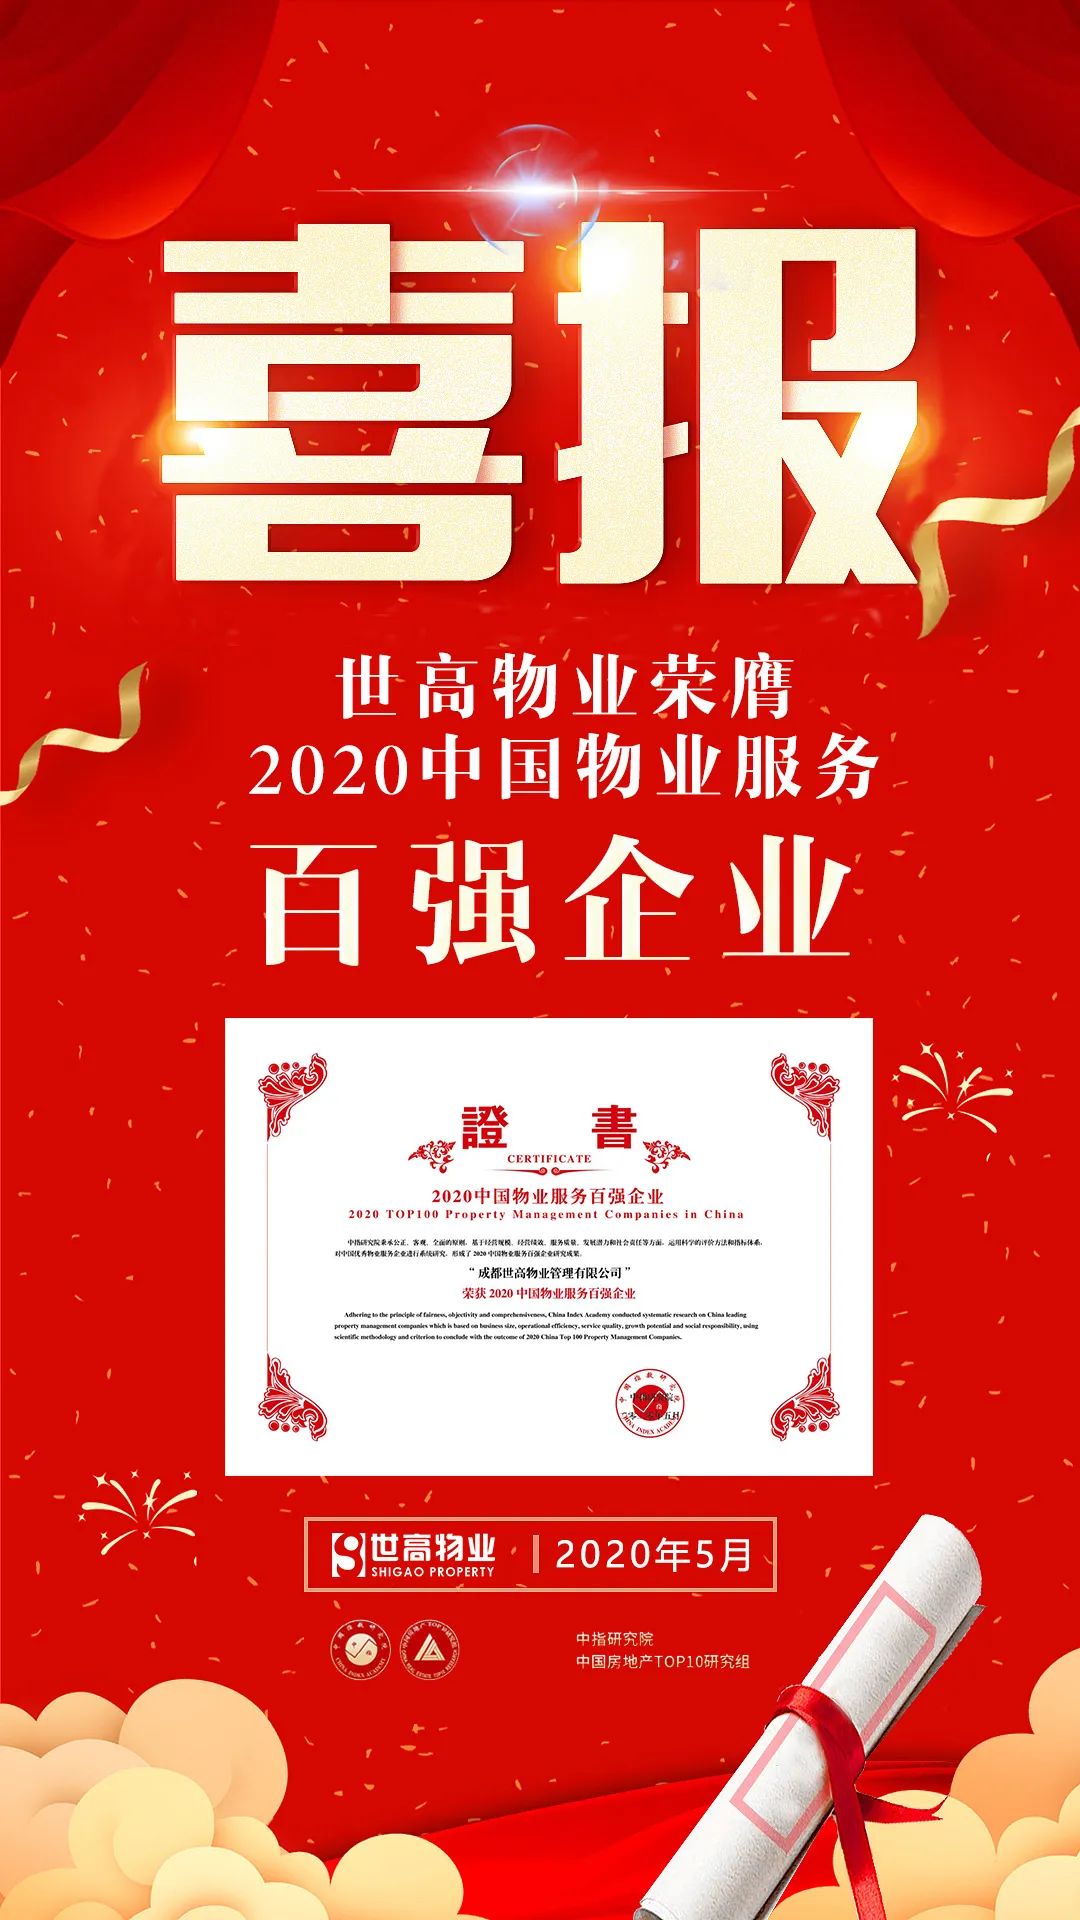 重磅 - 世高物业荣膺“2020中国物业服务百强企业”